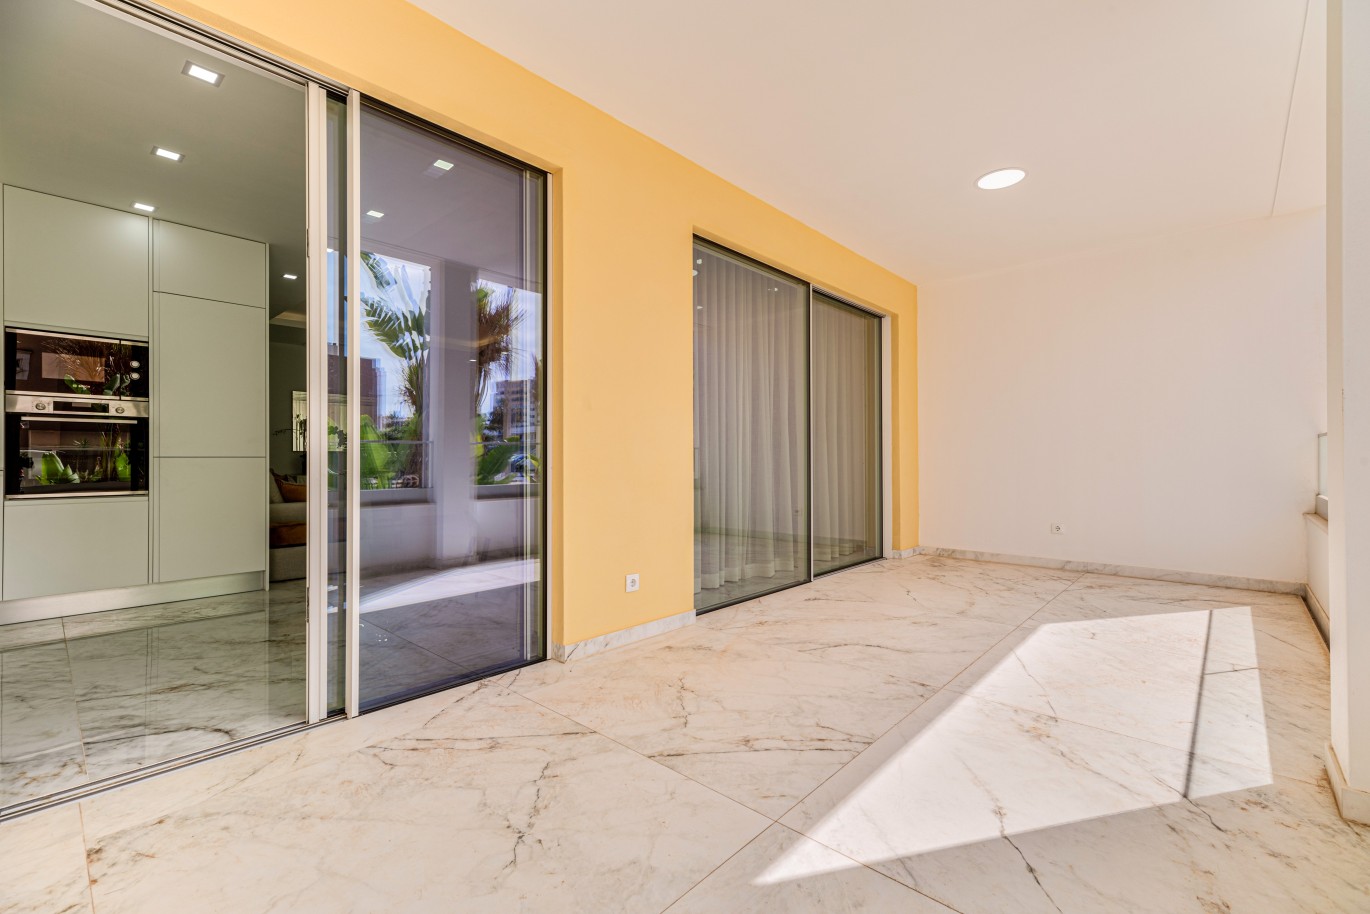 Verkauf einer Wohnung im Bau, mit Terrasse, Lagos, Algarve, Portugal_238175